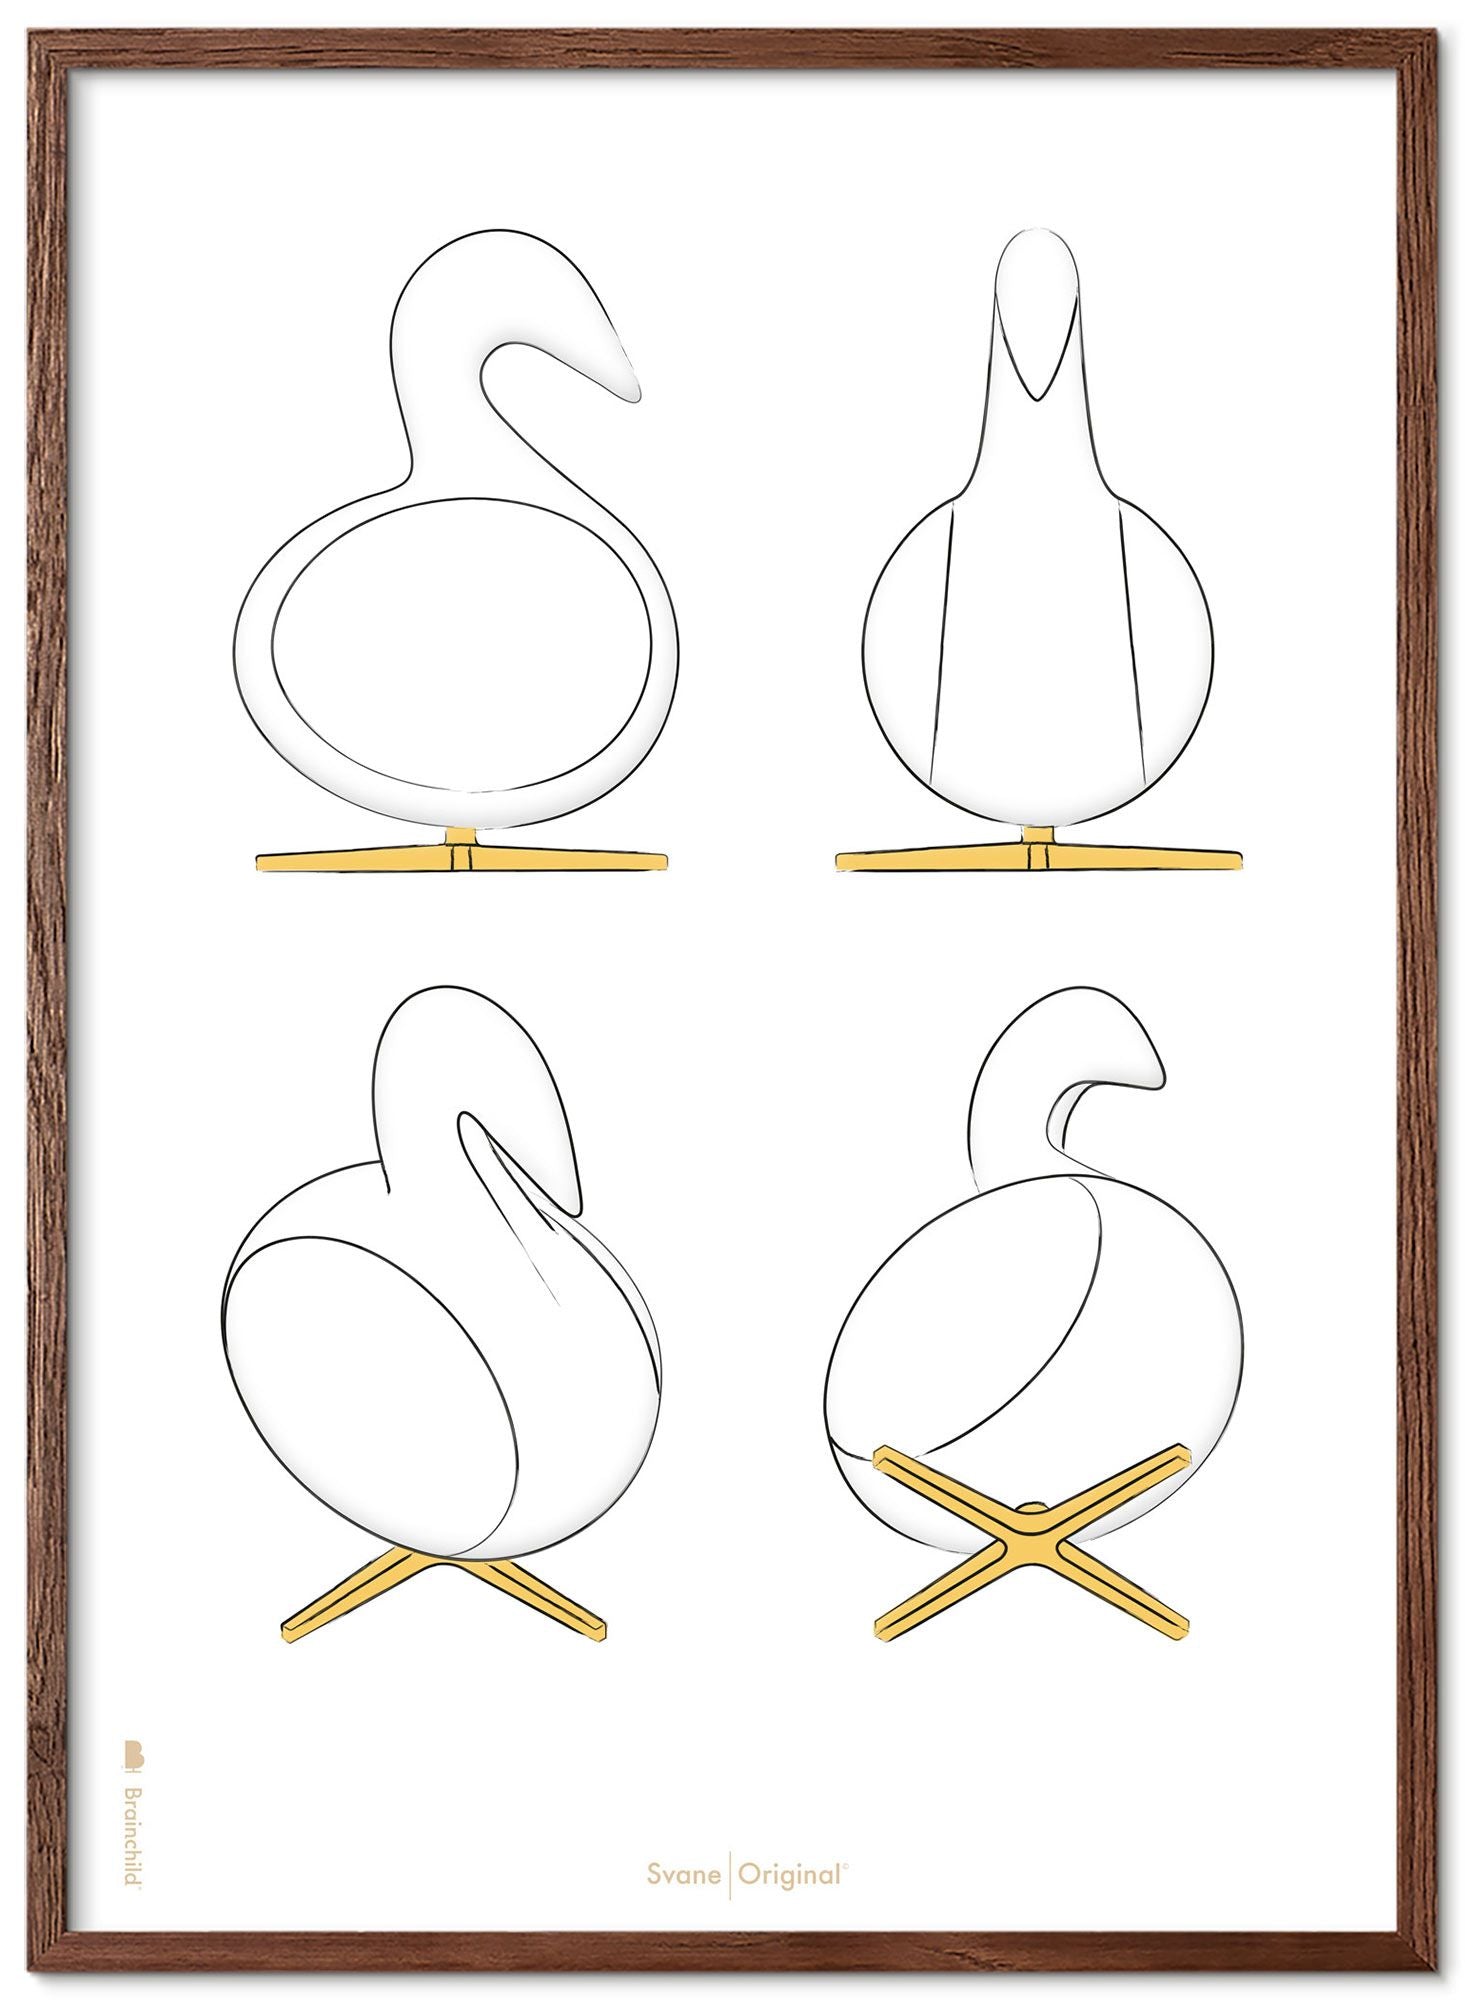 Marco de póster de bocetos de diseño de creación de swan hecha de madera oscura 50x70 cm, fondo blanco